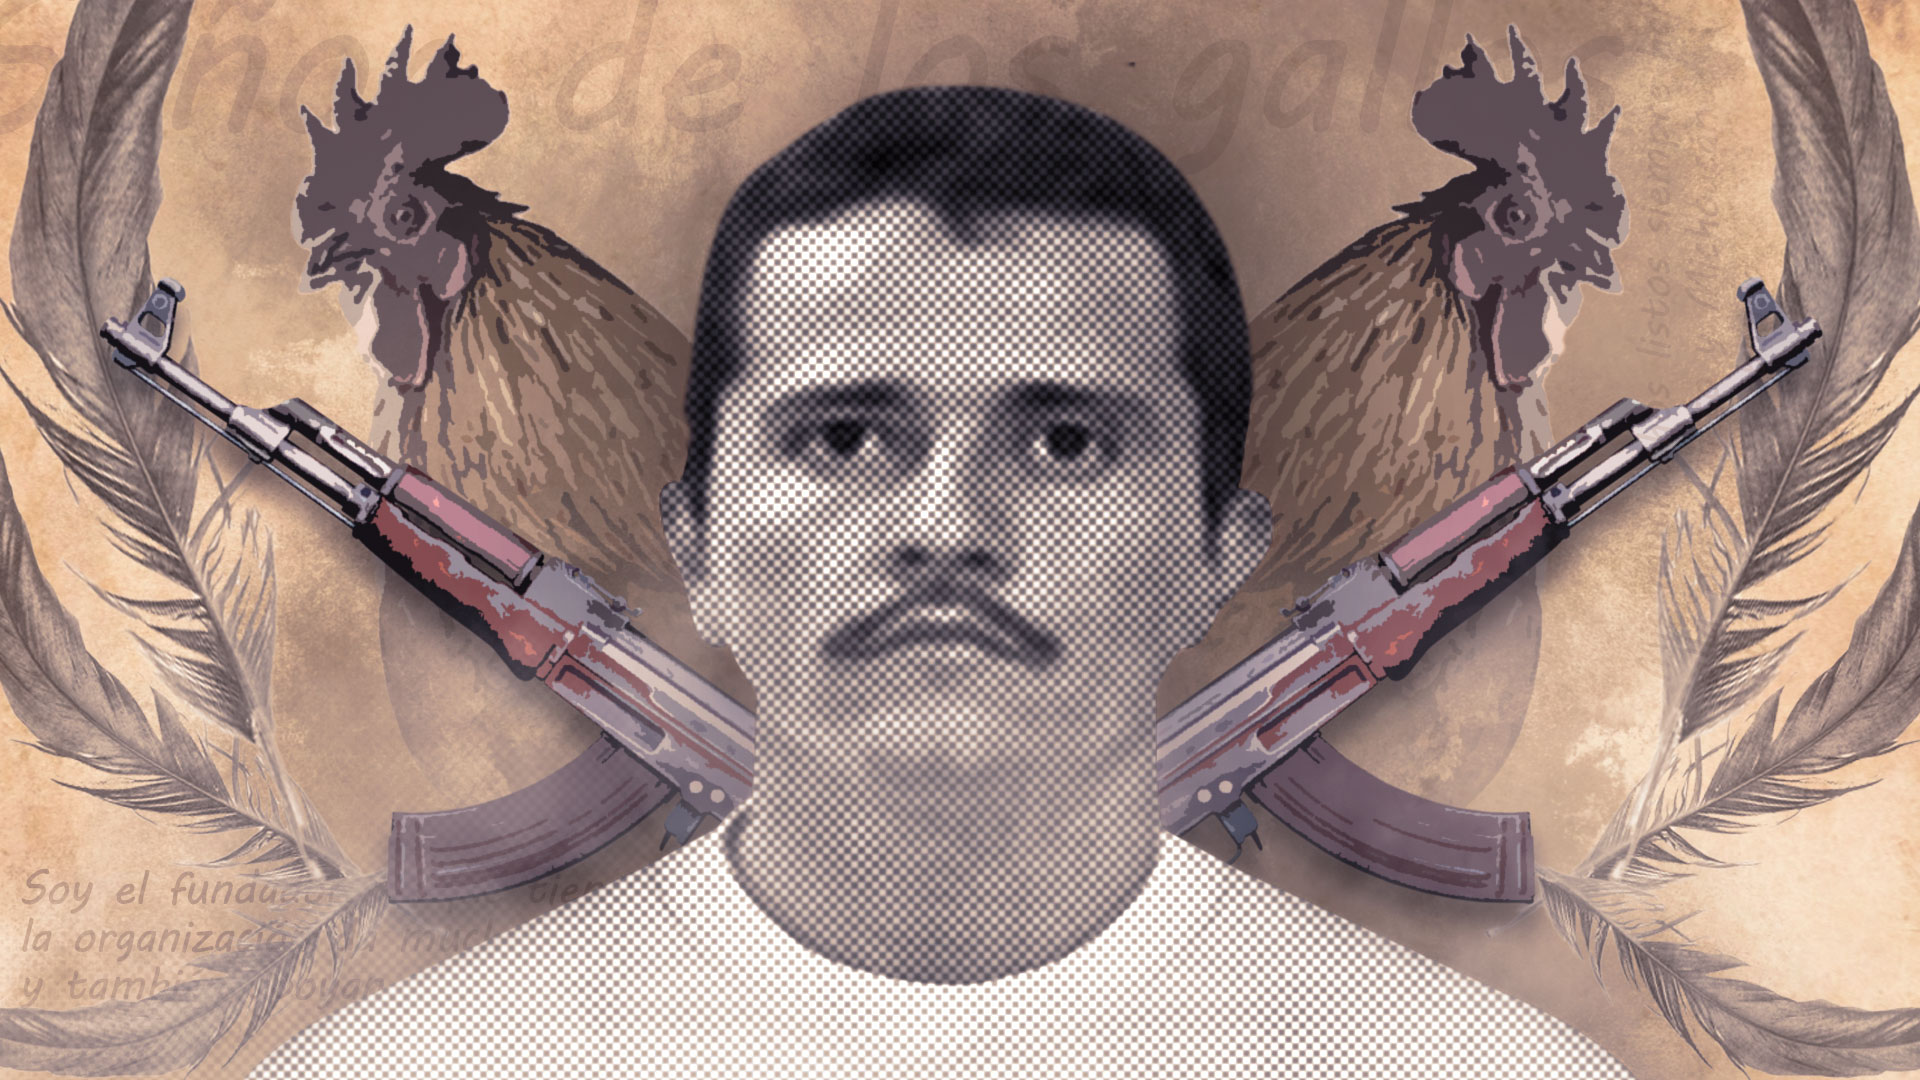 Agentes Federales asesinados en el Chamizal en Juarez 6GY6RT3LTNB67CEZM5EXR3W3HU